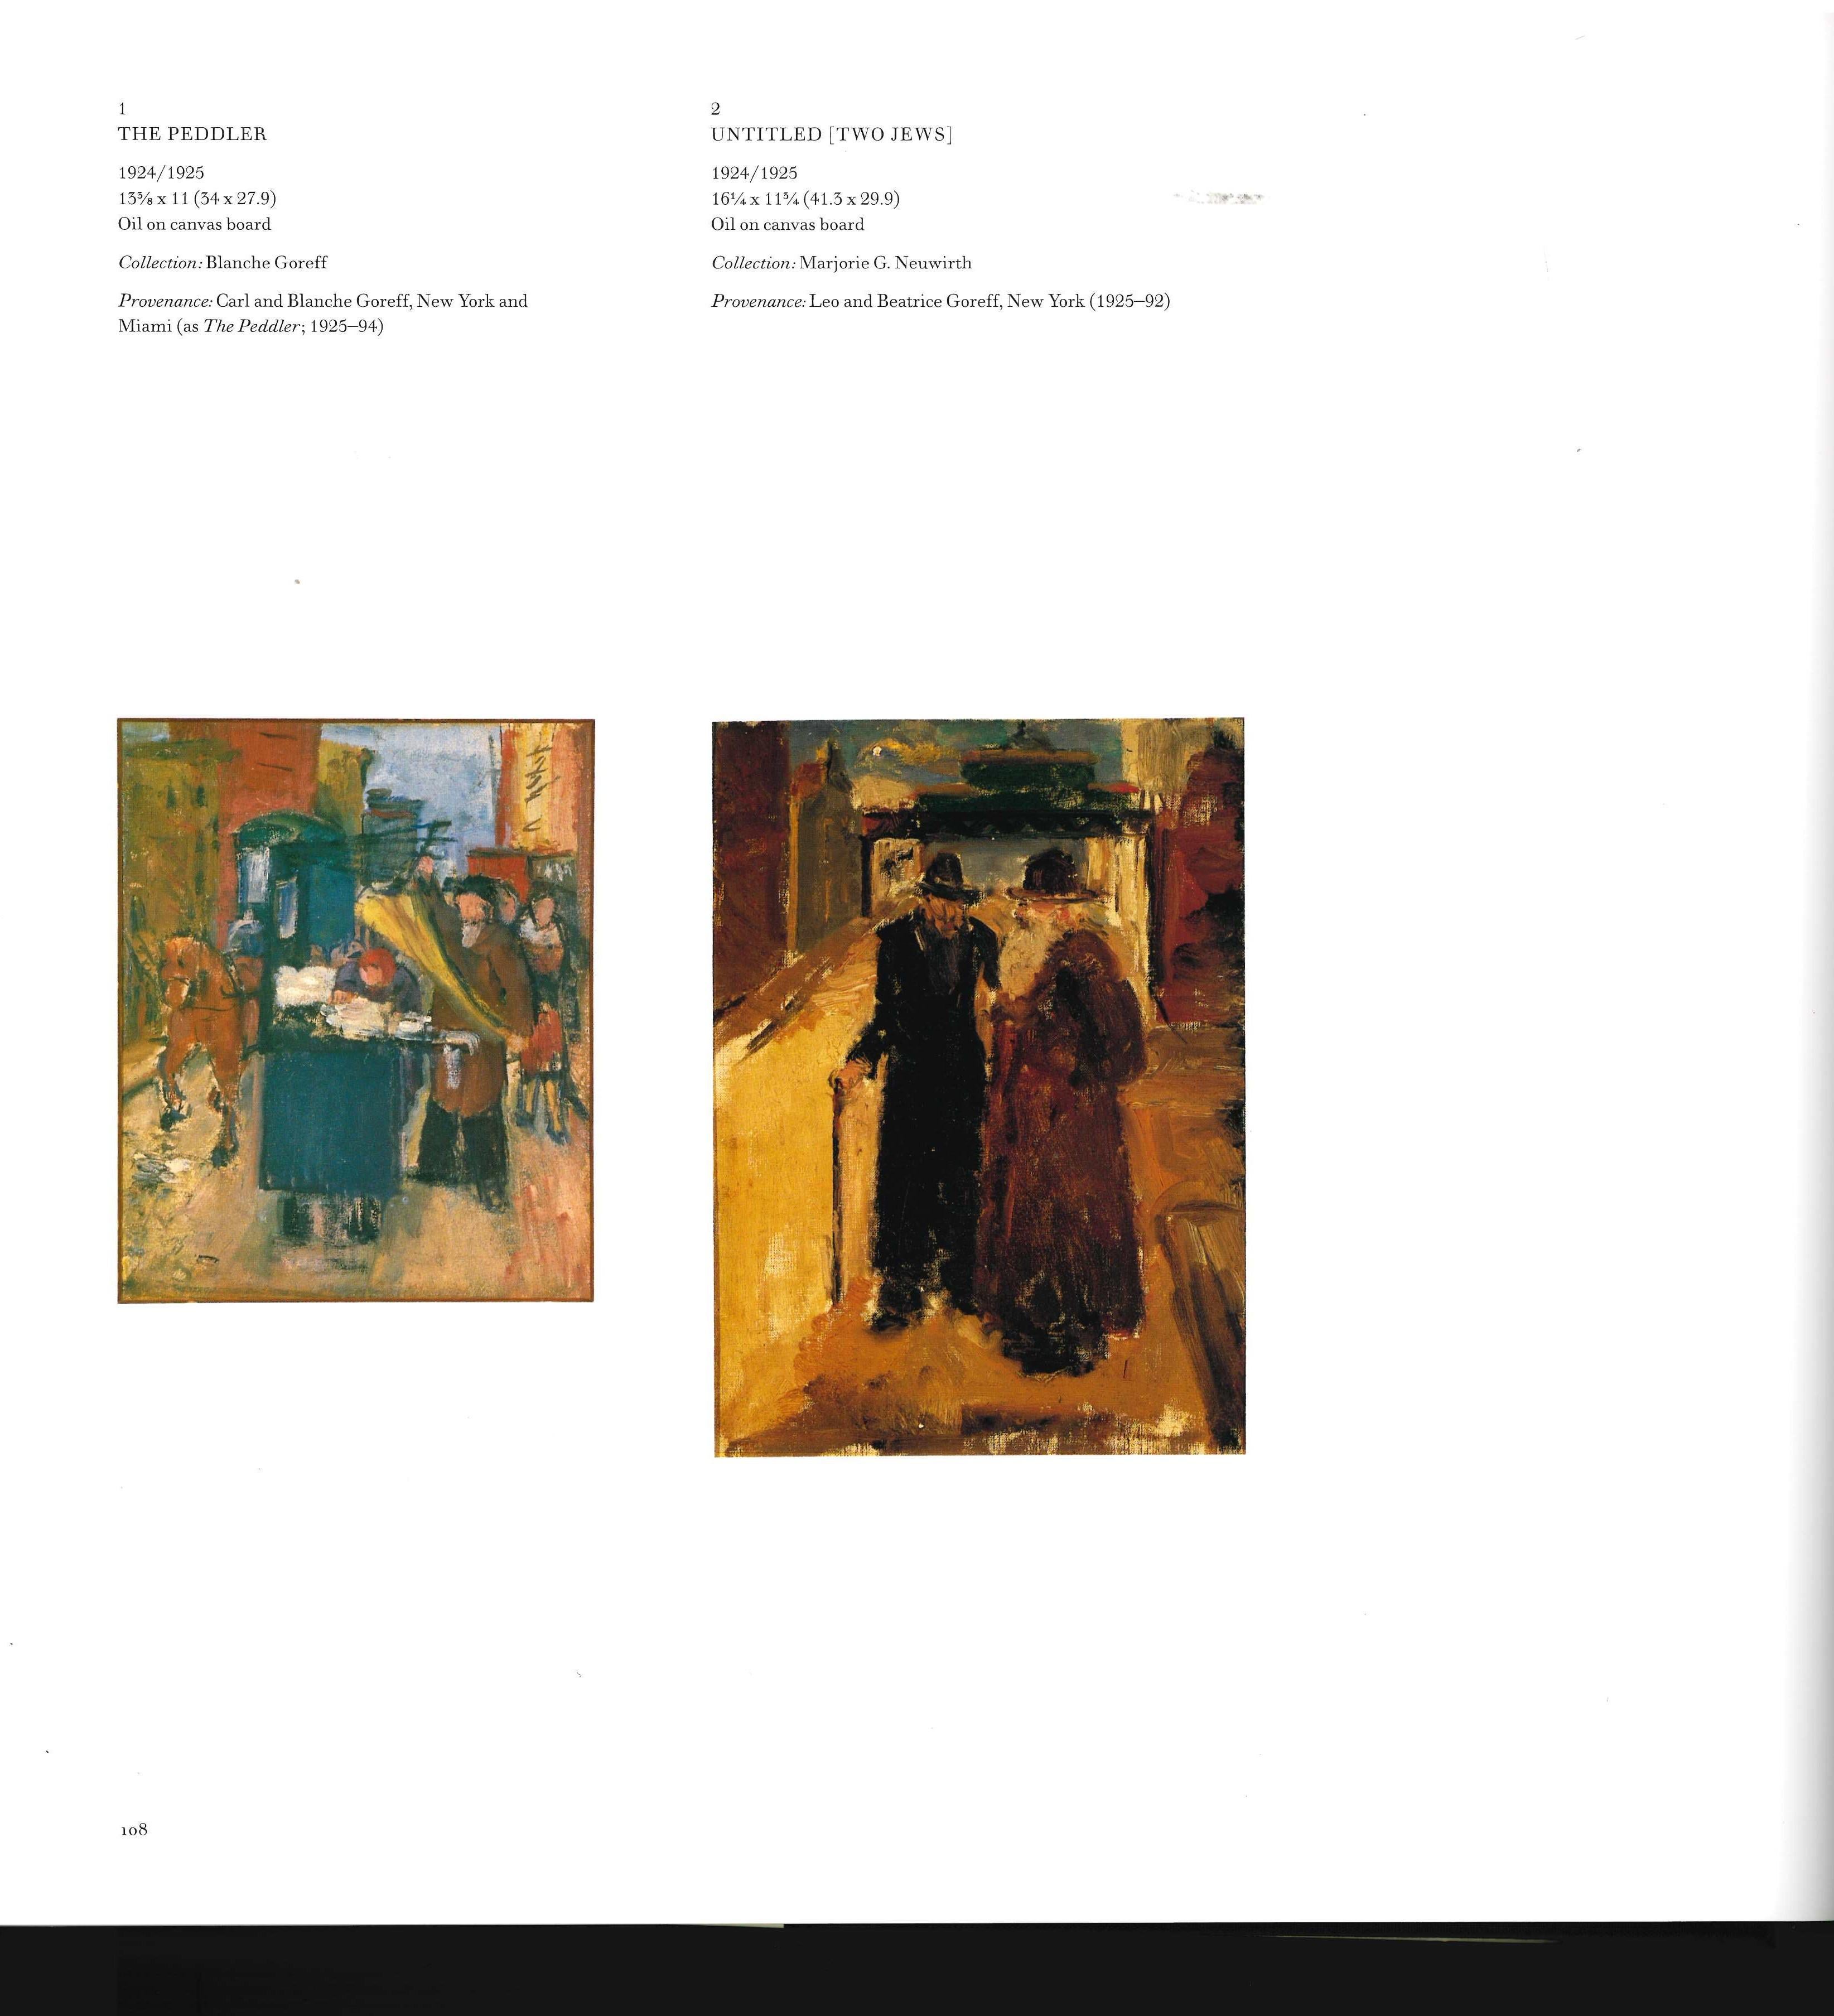 Dieses Buch ist der erste Band des endgültigen Werkverzeichnisses von Mark Rothko, einem der größten abstrakten Künstler des 20. Jahrhunderts. Es dokumentiert sein gesamtes Schaffen an Leinwand- und Tafelbildern und gibt alle erhaltenen Werke in